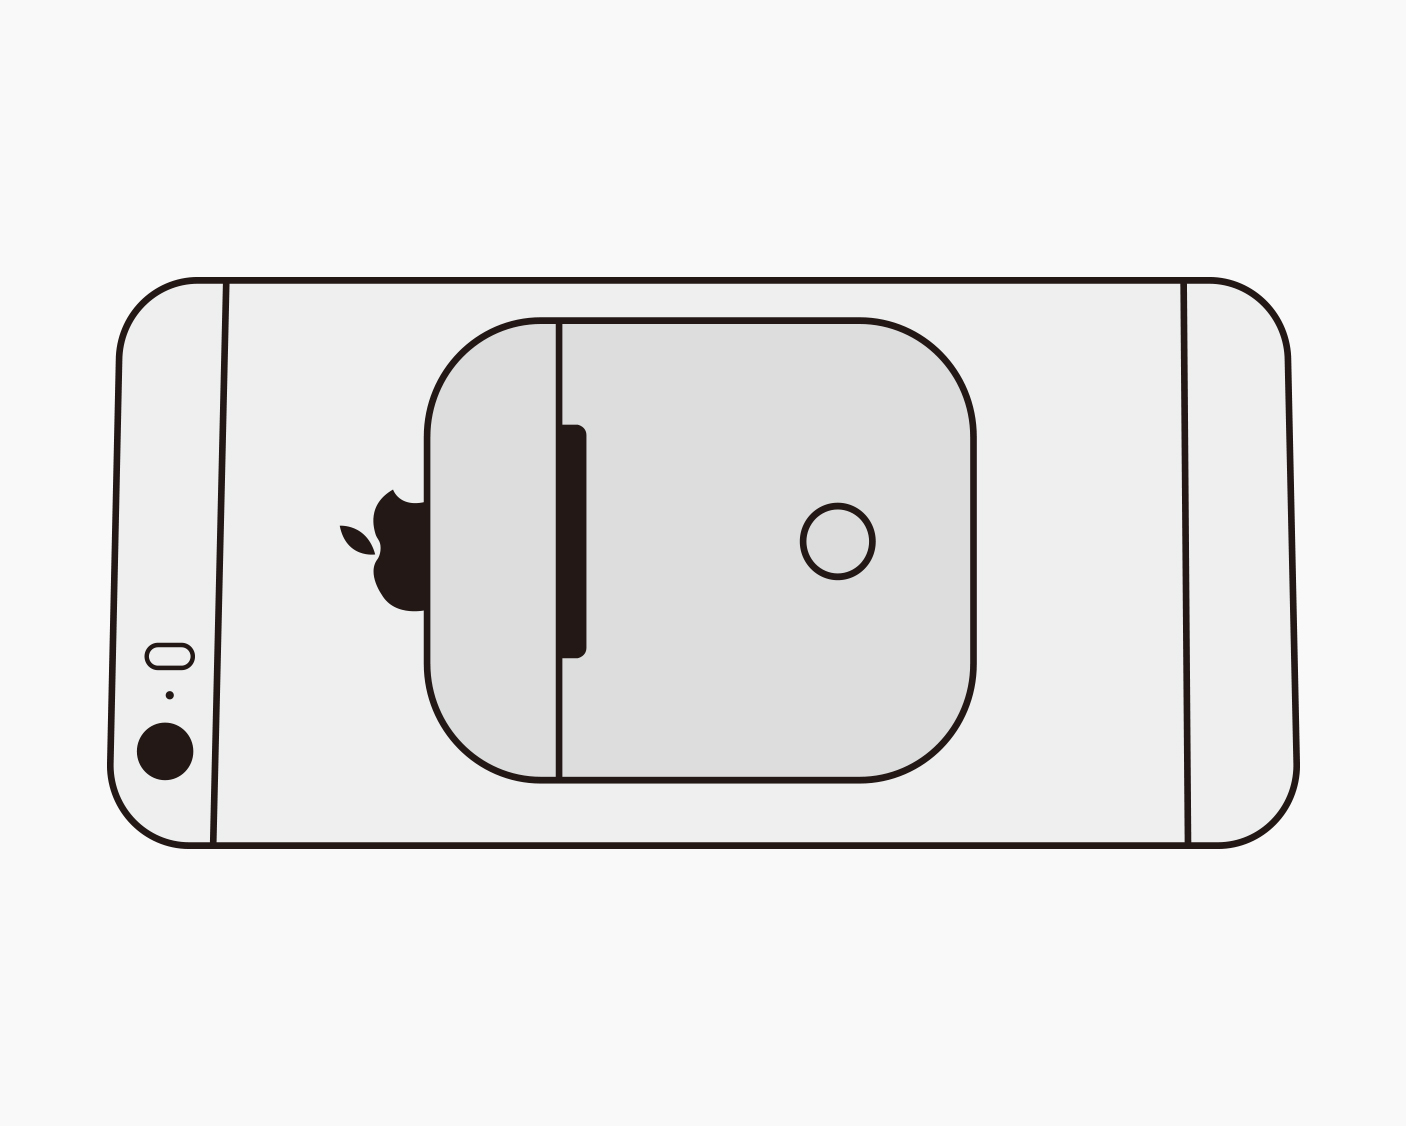  Sinjimoru Agarre universal de silicona para teléfono, soporte  de agarre para teléfono celular con bucles de estiramiento, para soporte de  teléfono en fundas de iPhone. Sinji Loop Stand Rosa : Celulares